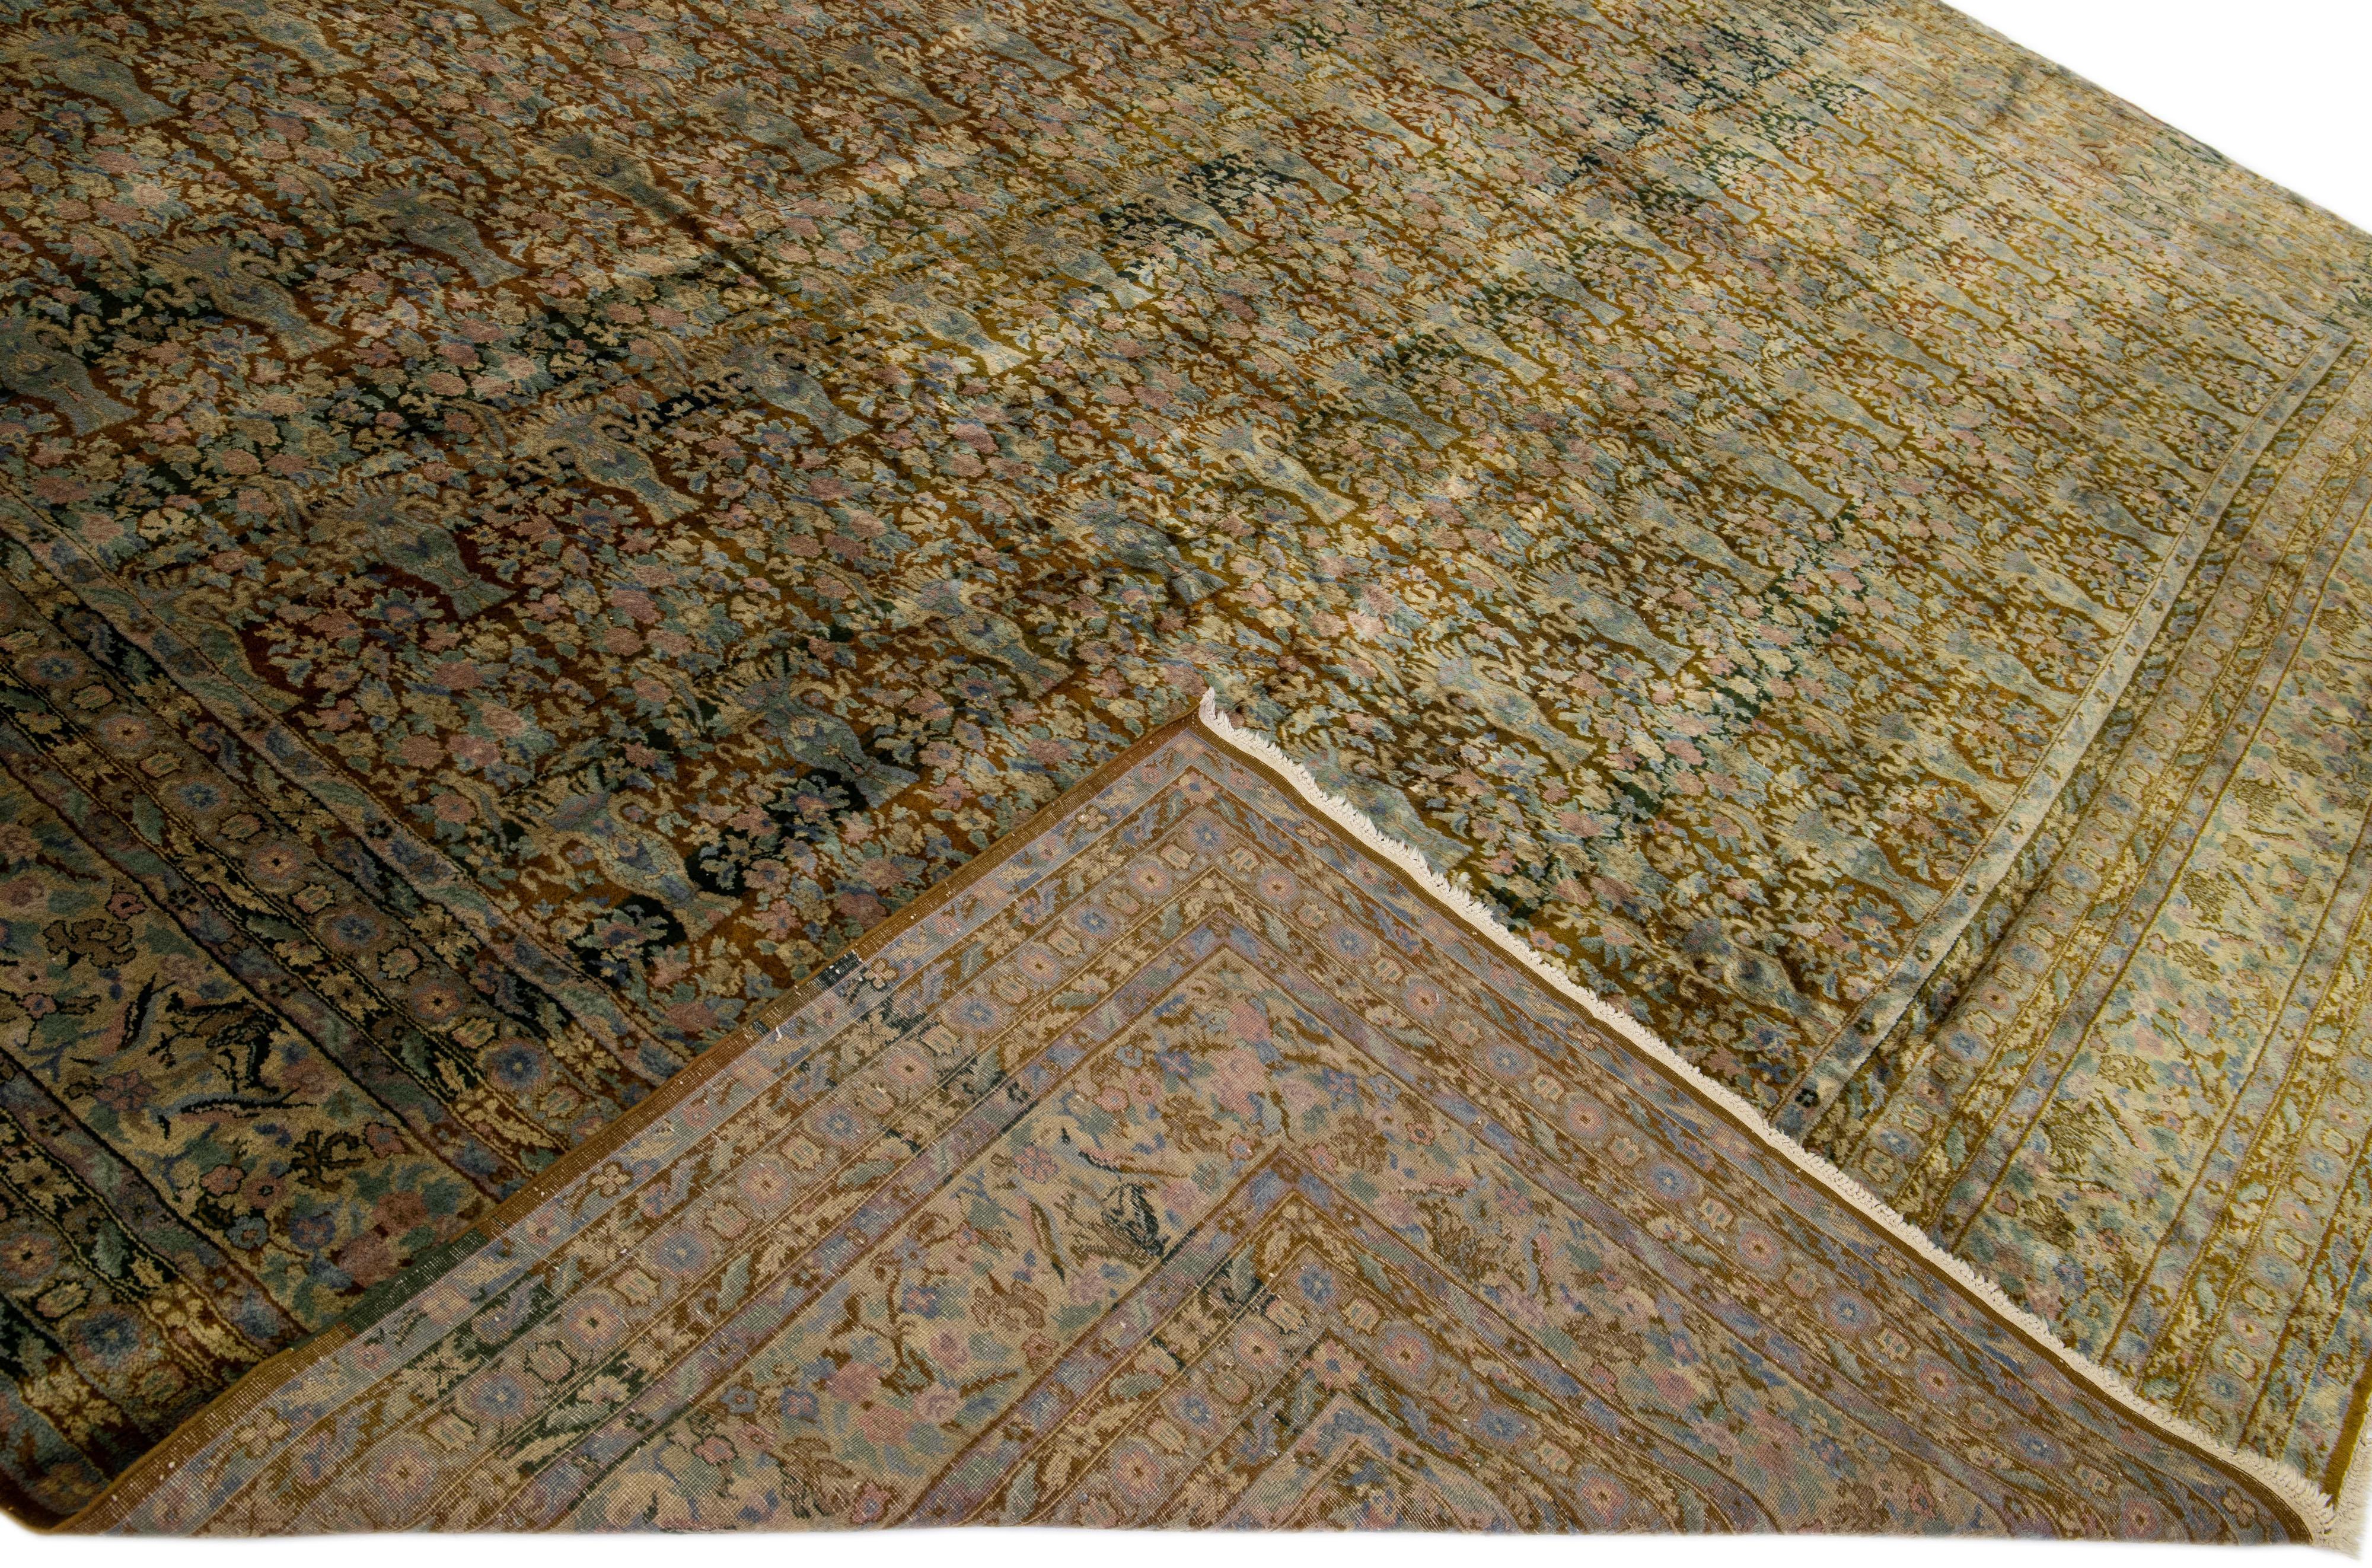 Magnifique tapis antique Agra en laine nouée à la main avec un champ brun. Ce tapis indien présente des accents roses et bleus dans un magnifique motif floral intégral.

Ce tapis mesure : 14'5